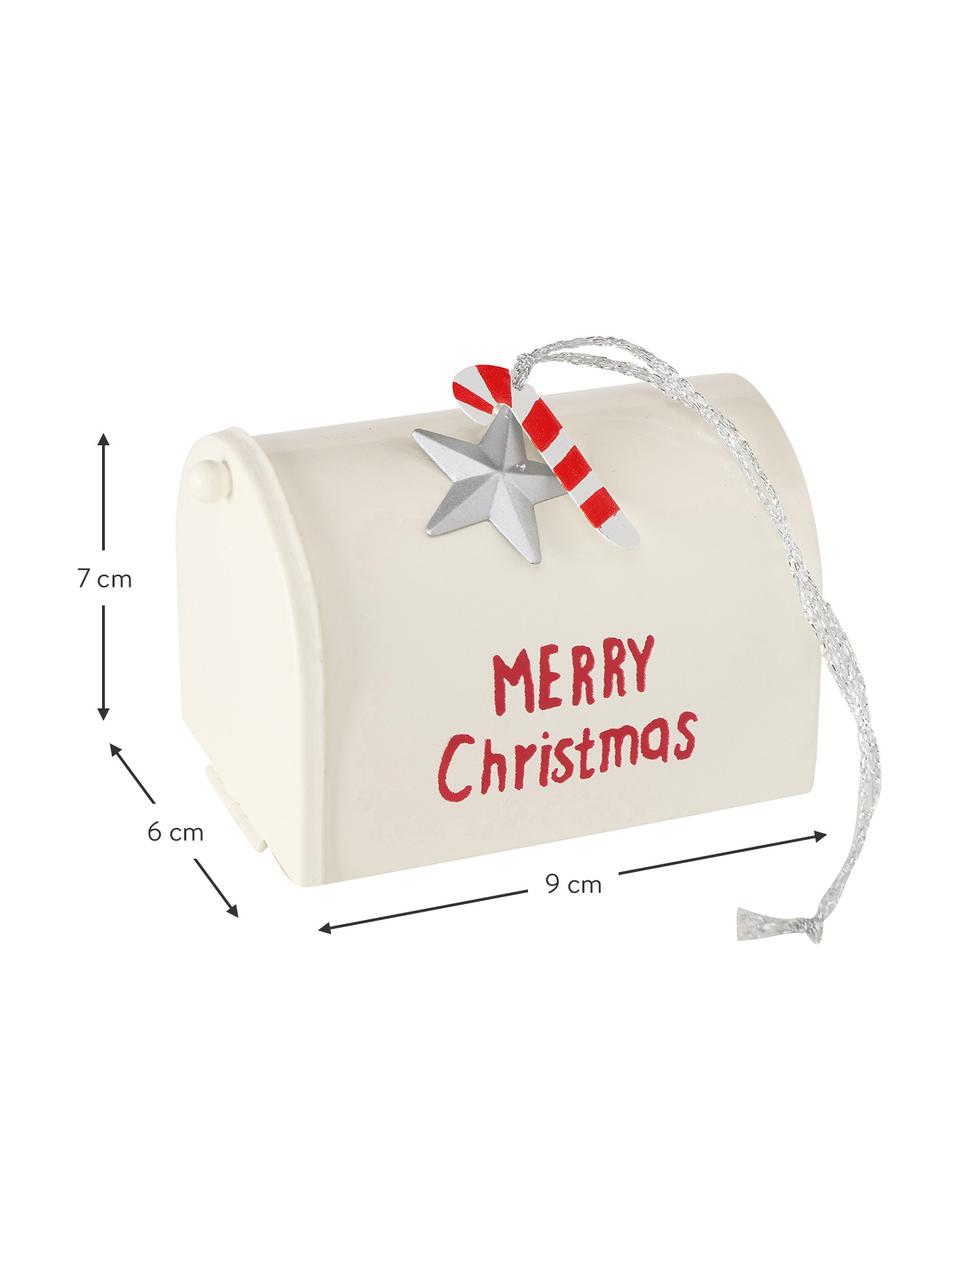 Kerstboomhanger Santa's Mailbox, set van 4, Gelakt metaal, polyester, Rood, wit, zilverkleurig, B 9 cm x H 7 cm